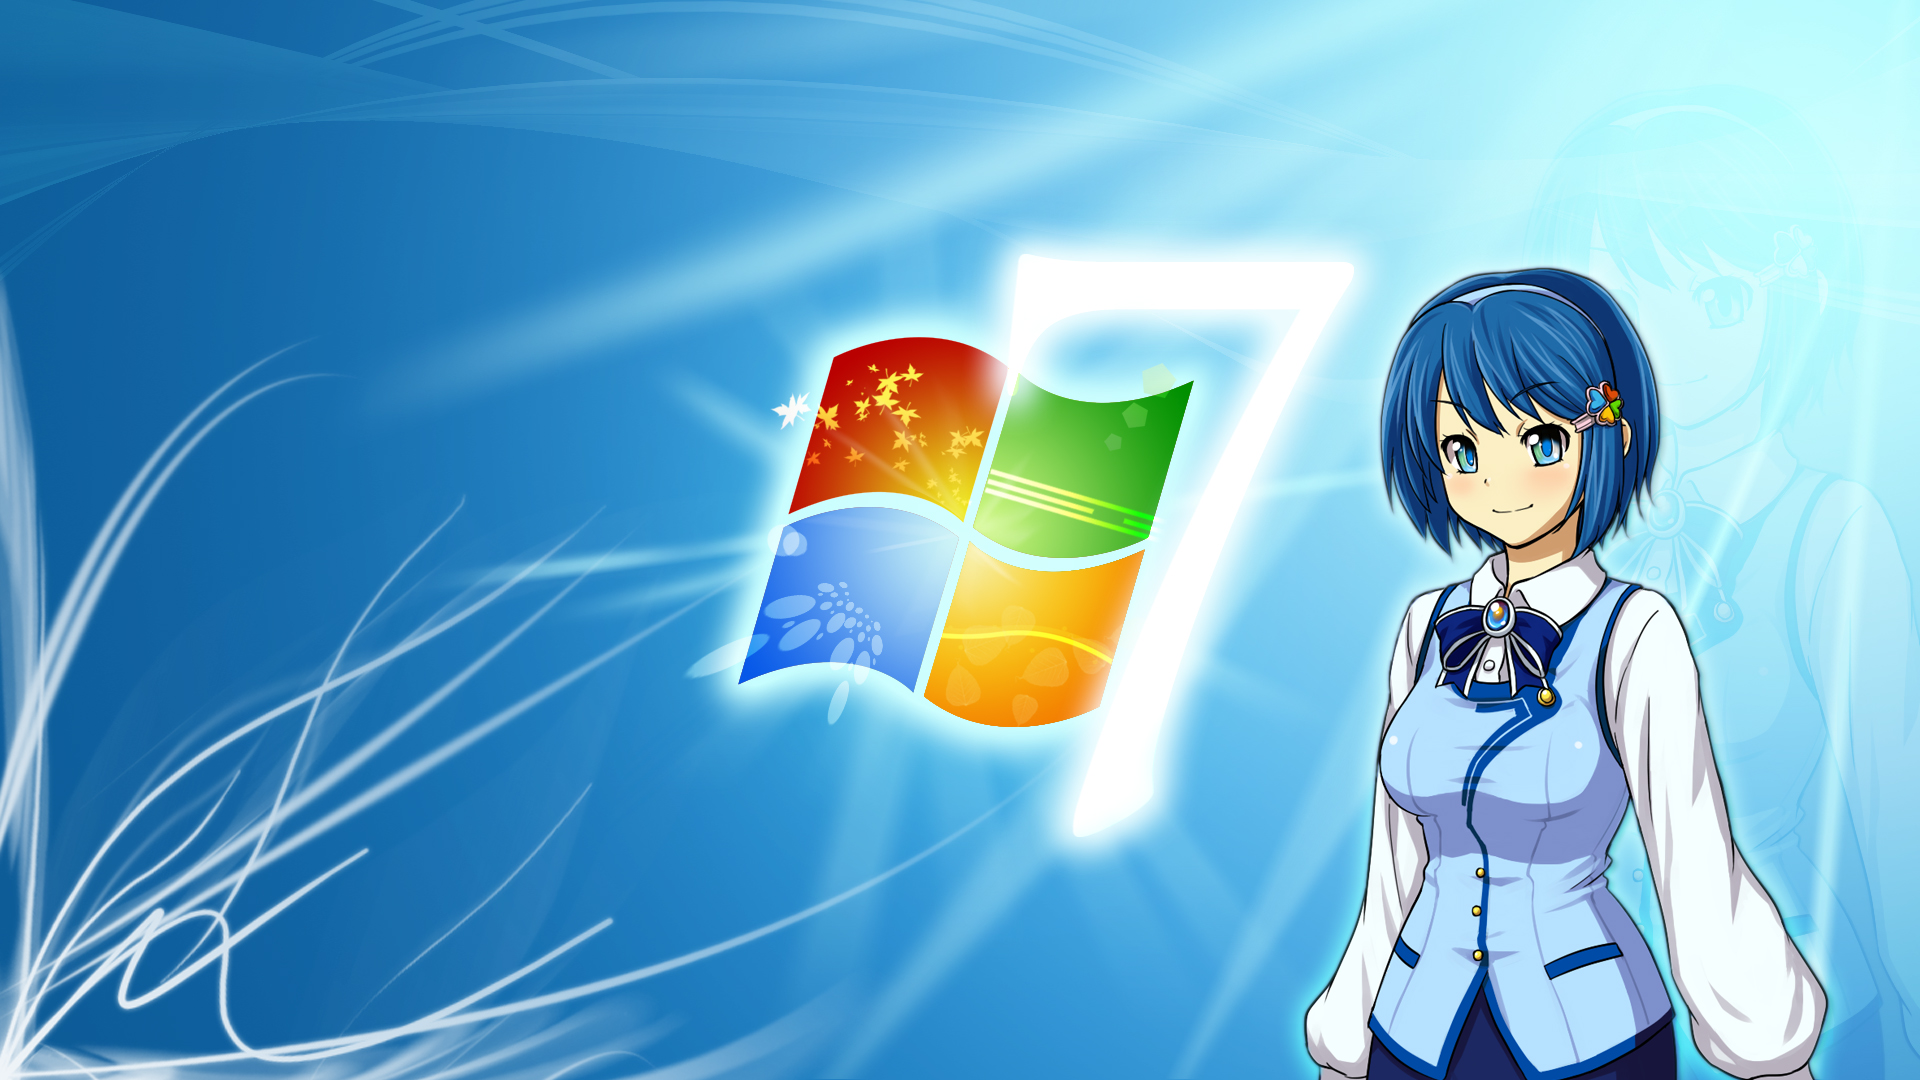 Hình nền Windows 7 Nhật Bản với OS-tan: Bạn là fan của những thiết kế đặc trưng của Nhật Bản? Hãy ngắm nhìn ngay bức hình nền Windows 7 Nhật Bản với OS-tan dễ thương. Hình ảnh này tràn đầy sắc màu và nét vẽ tinh tế, chắc chắn sẽ làm bạn cảm thấy thích thú và tự hào khi sỡ hữu nó trên máy tính của mình.